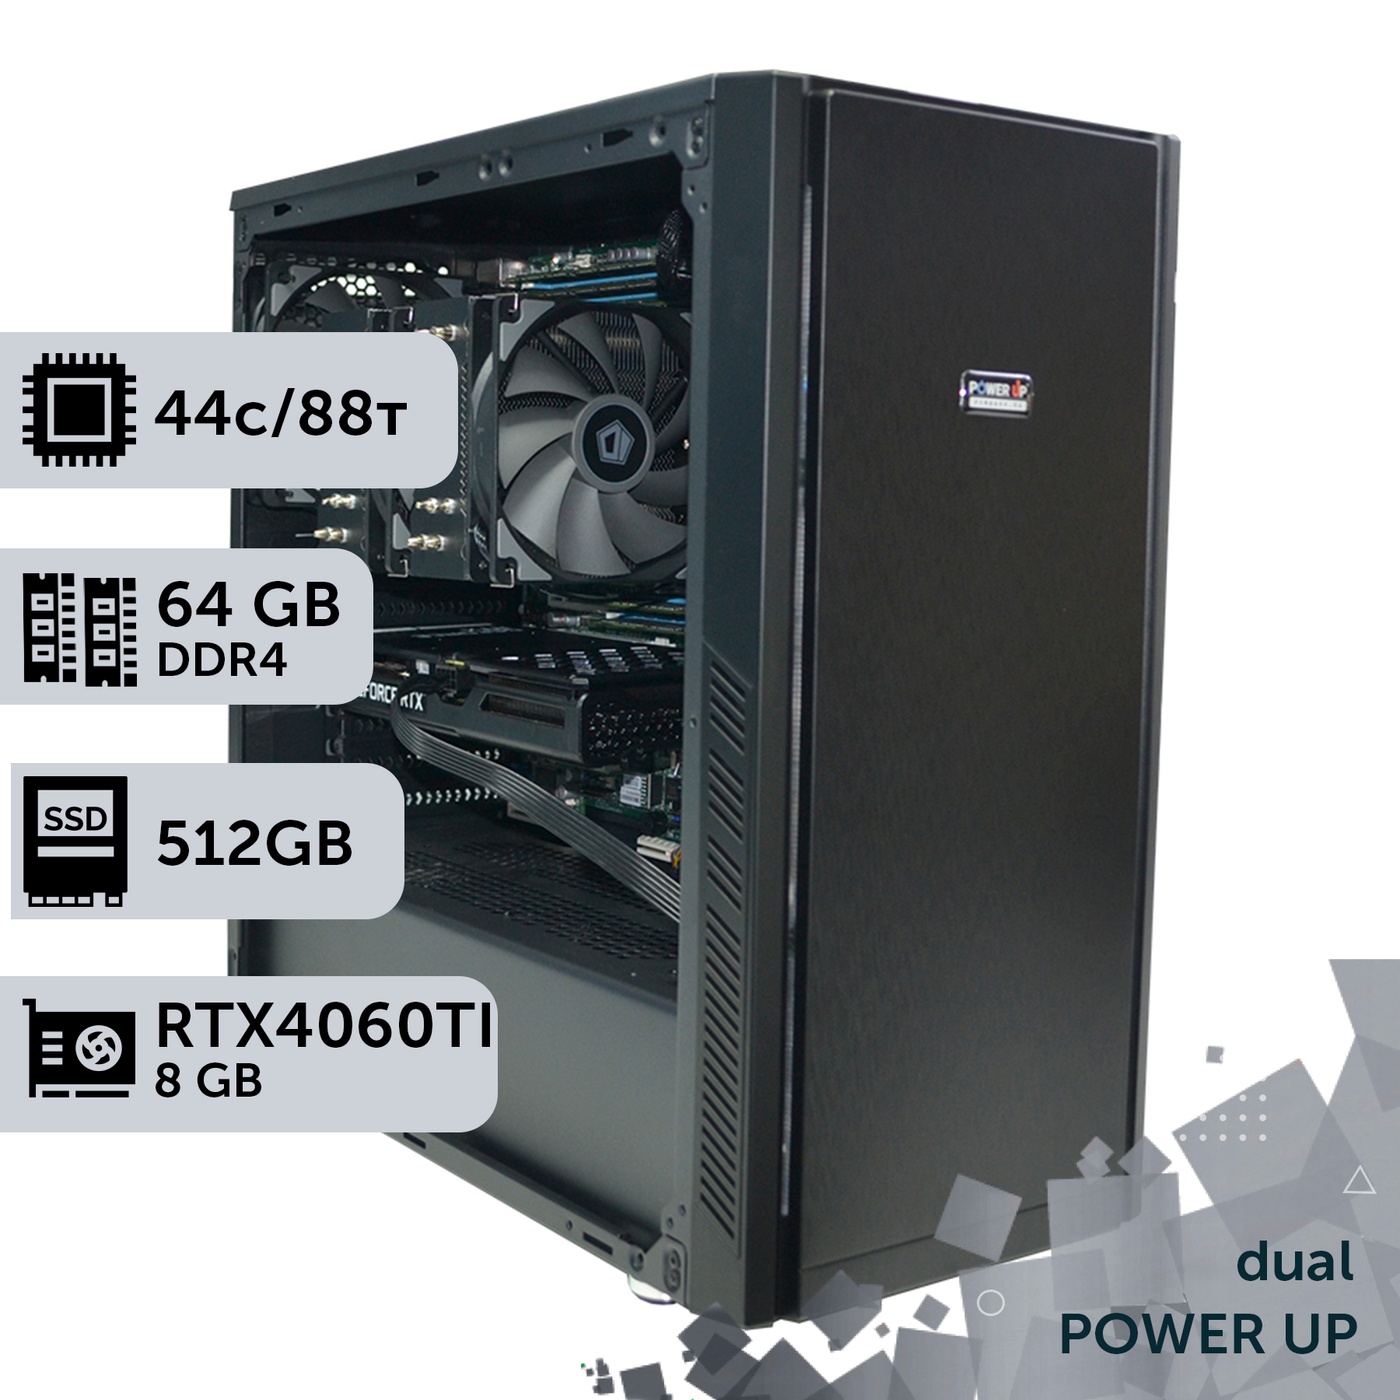 Двухпроцессорная рабочая станция PowerUp #410 Xeon E5 2699 v4 x2/64 GB/SSD 512GB/GeForce RTX 4060Ti 8GB